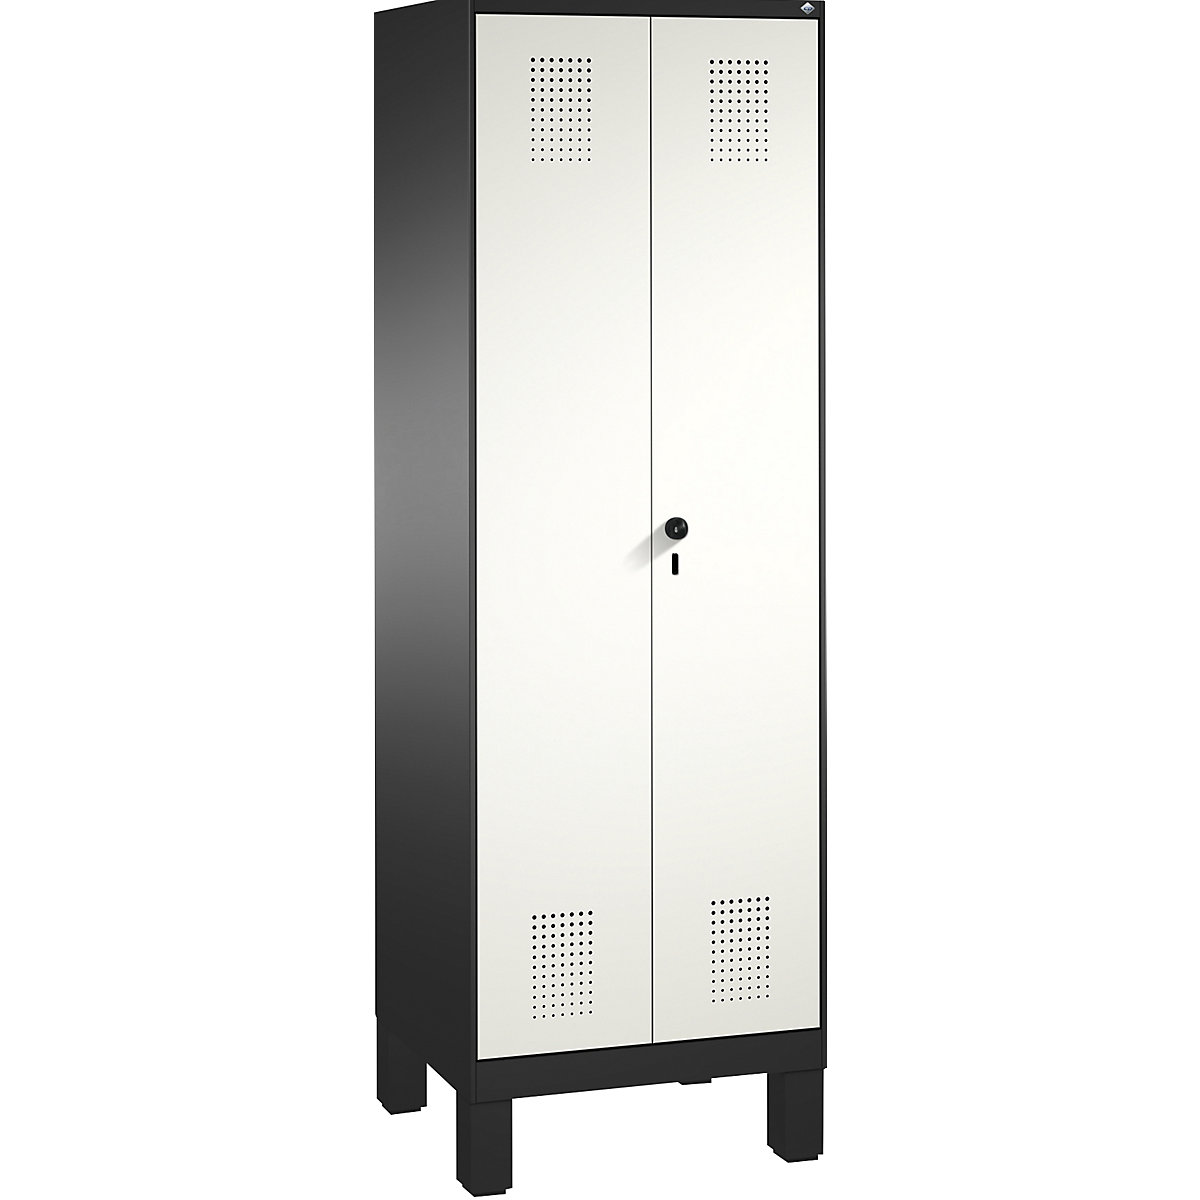 EVOLO takarítószer-/készüléktároló szekrény – C+P, rövidített válaszfal, 6 akasztó, rekeszek 2 x 300 mm, lábakkal, feketésszürke / közlekedési fehér-14